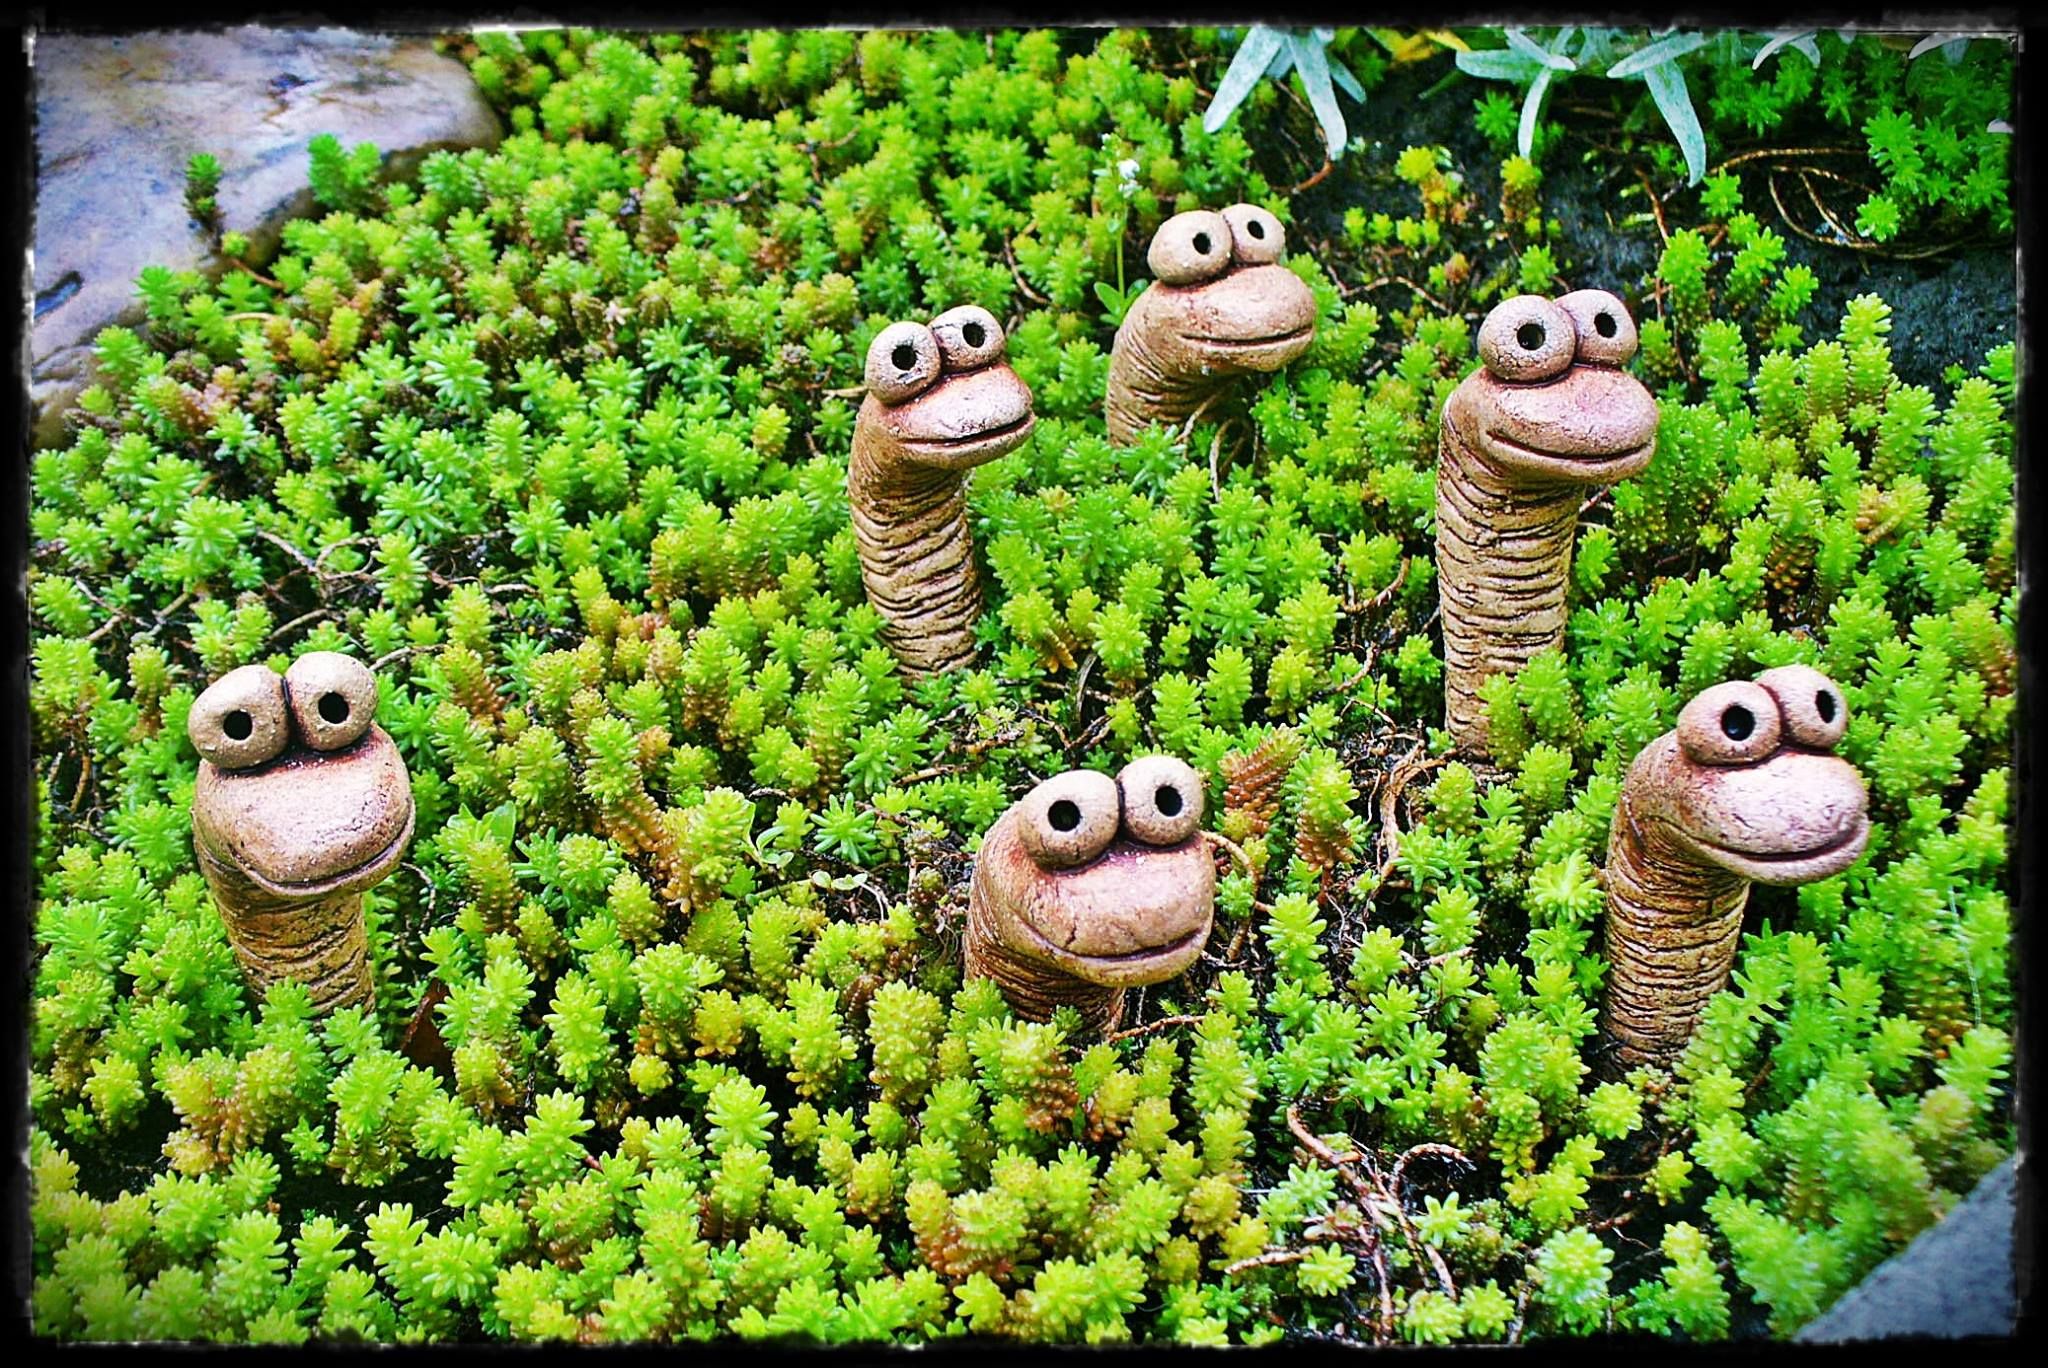 Frosch Deko Garten Schön Baby Monsters Hands Eye Stalks and More